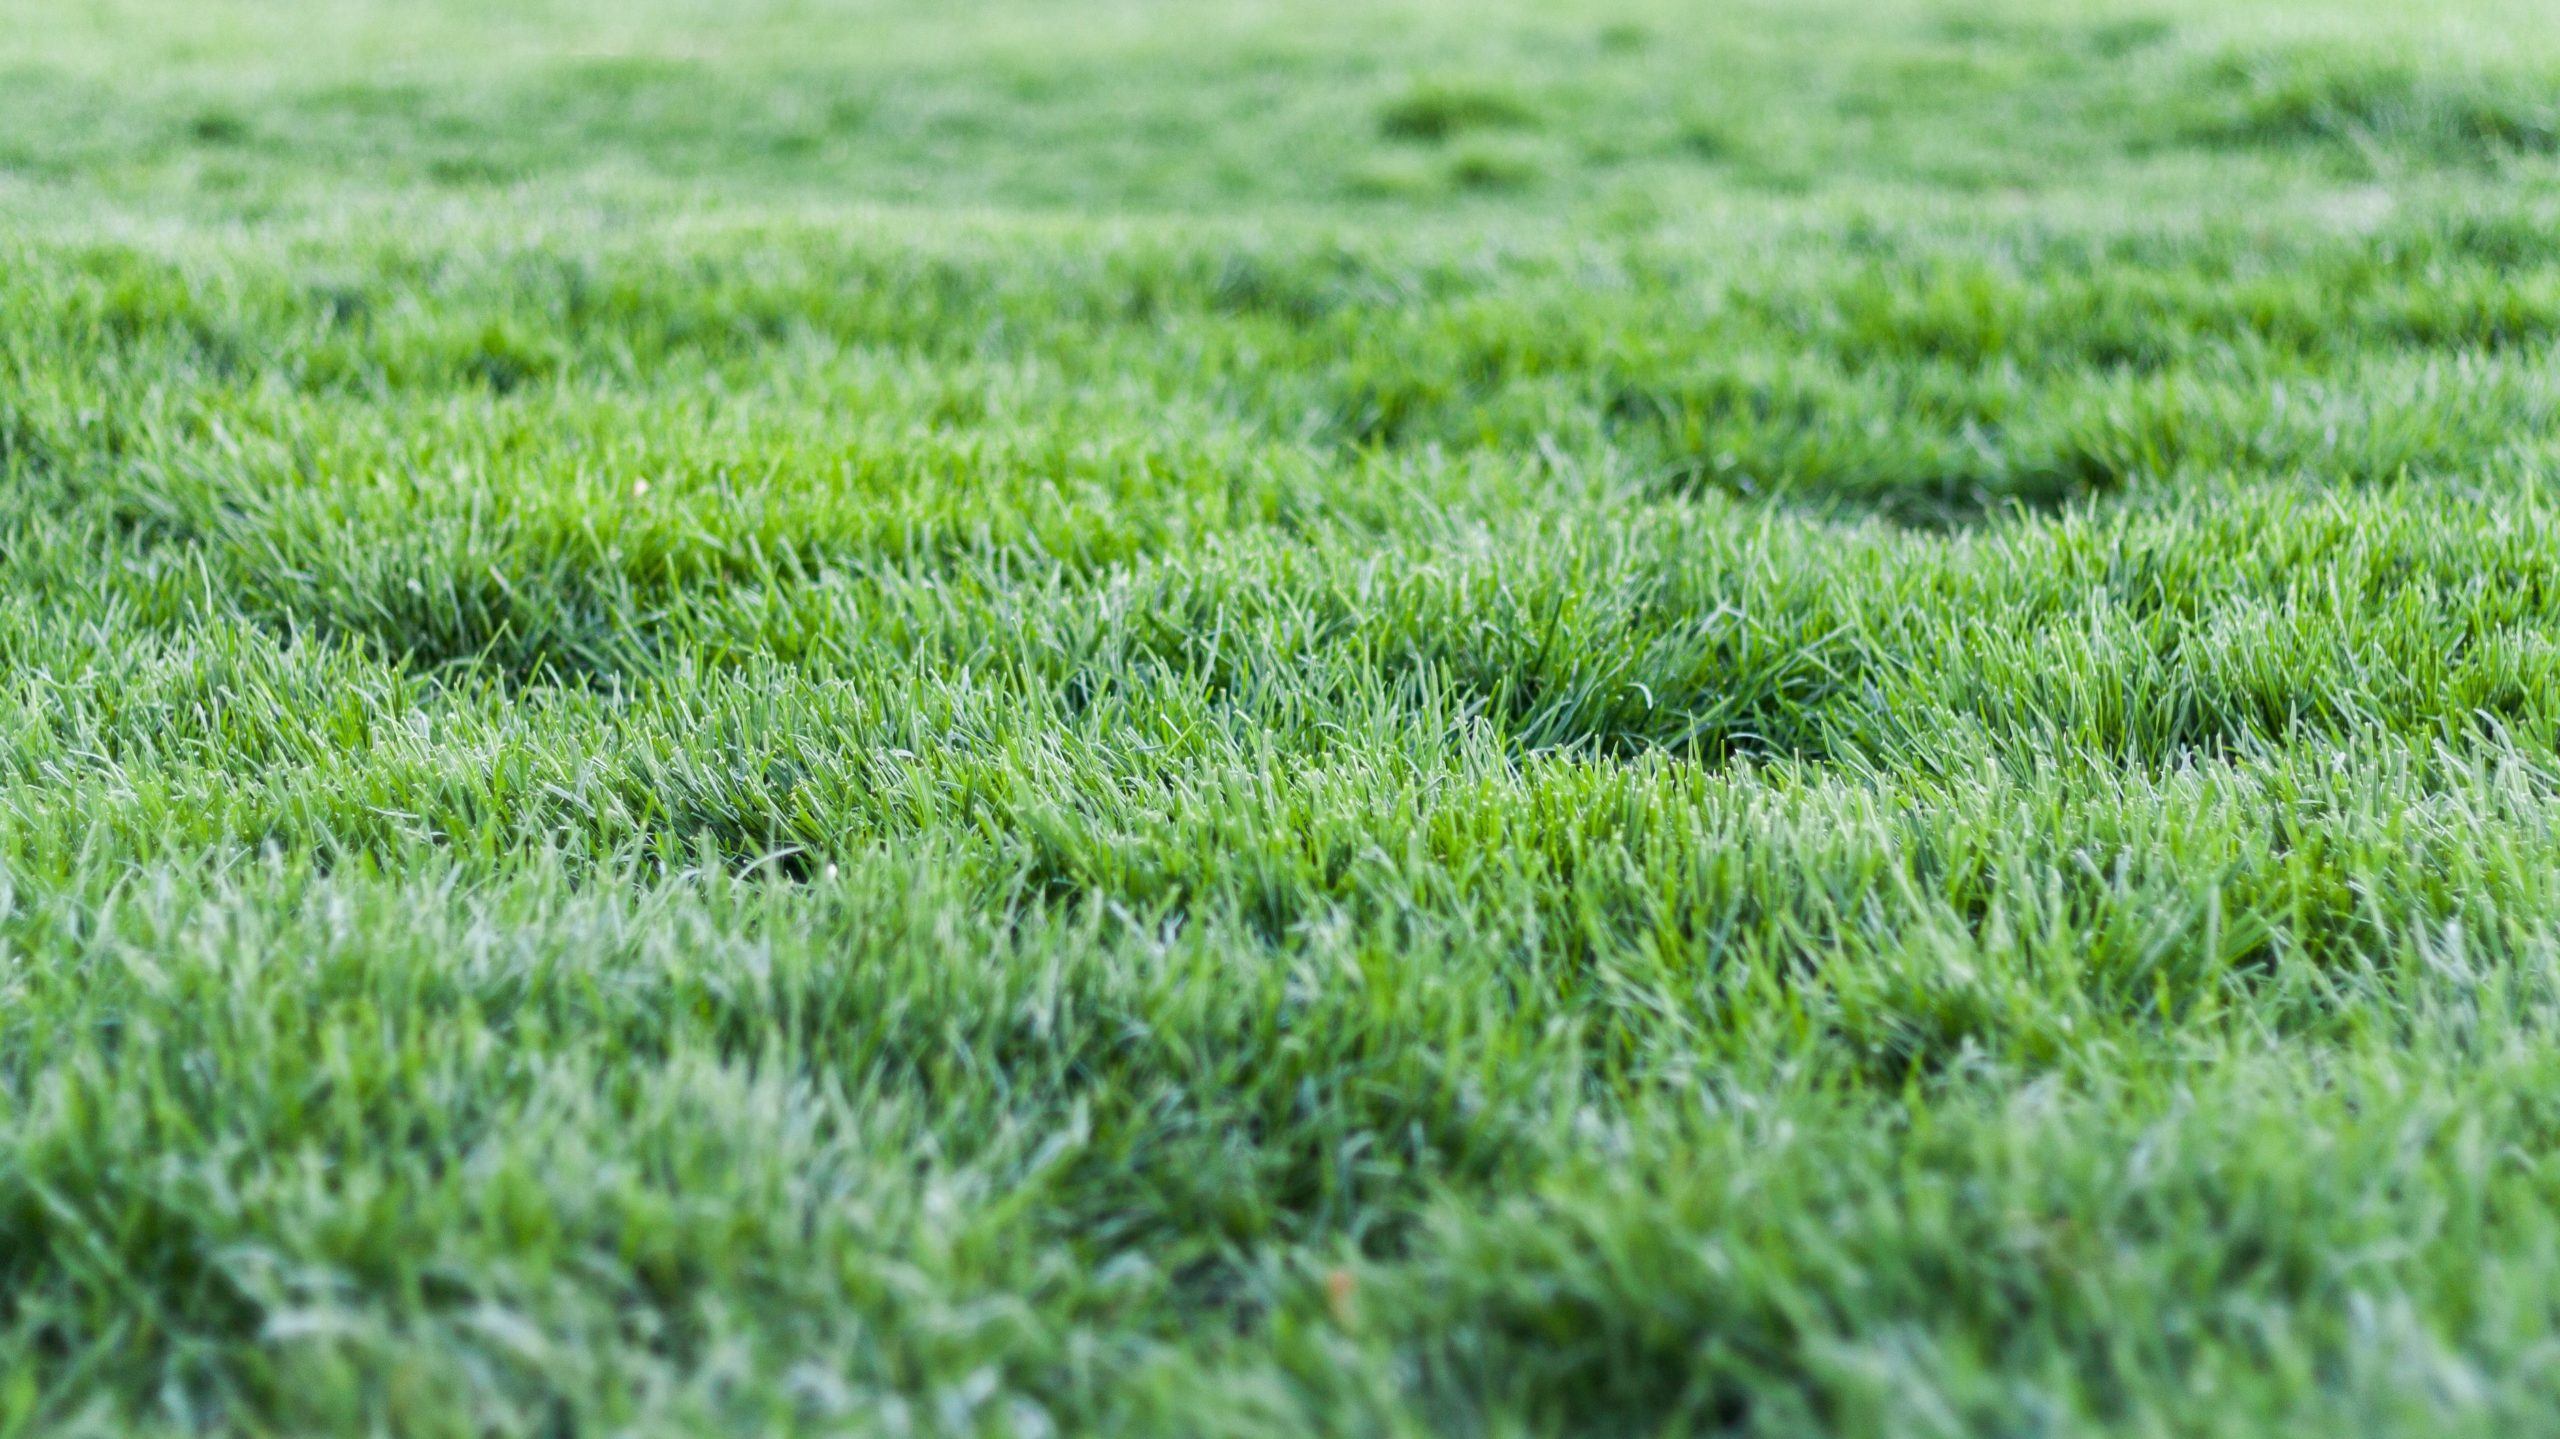 Grass like a green carpet